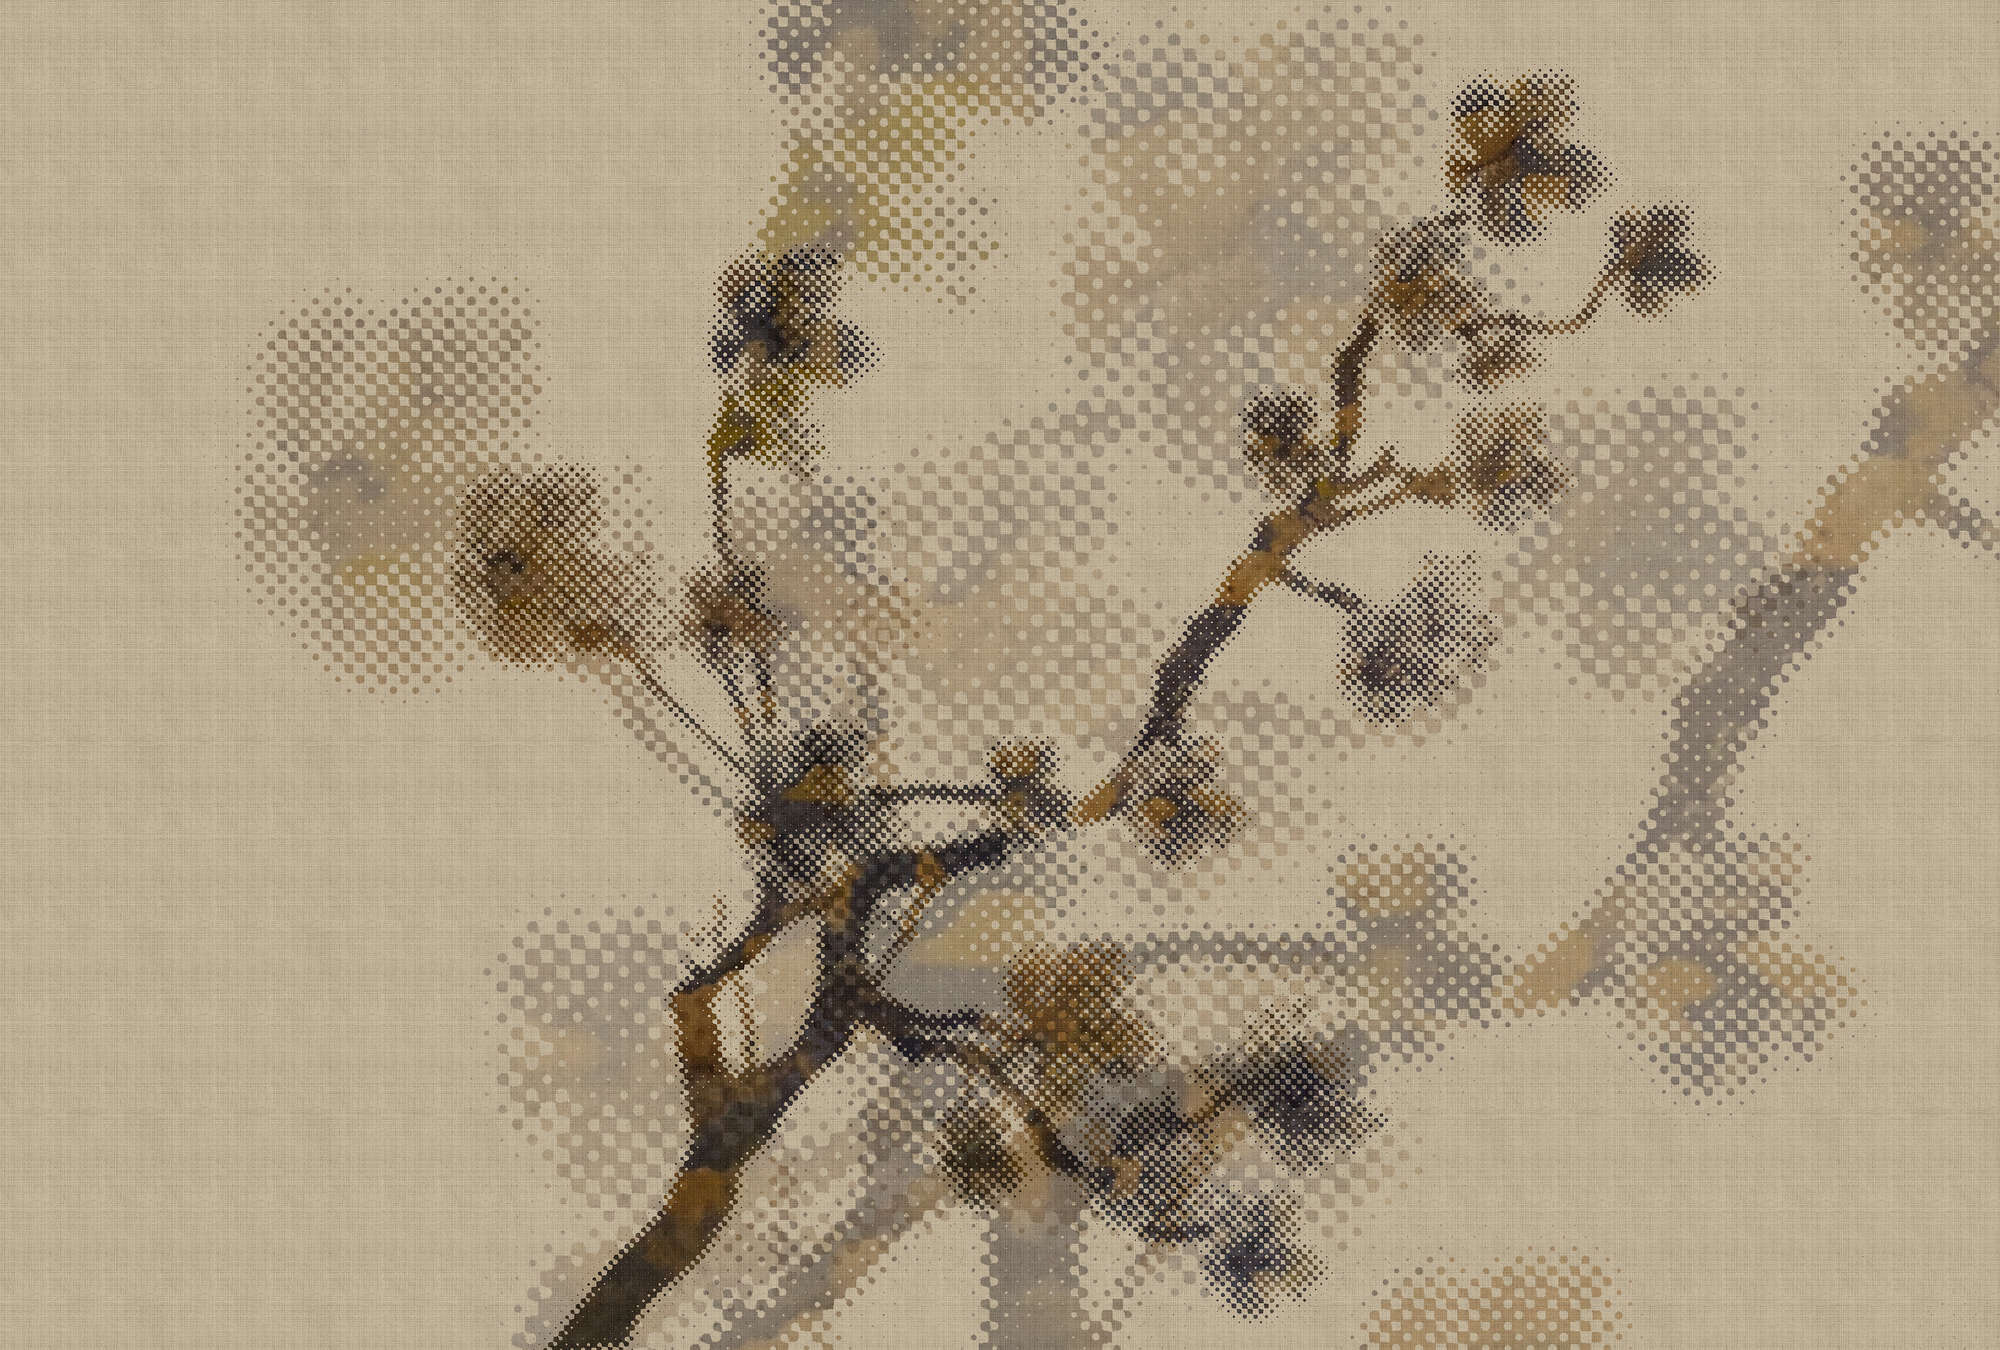             Twigs 2 - Fototapete in naturleinen Struktur mit Zweigmotiv & Pixeldesign – Beige | Perlmutt Glattvlies
        